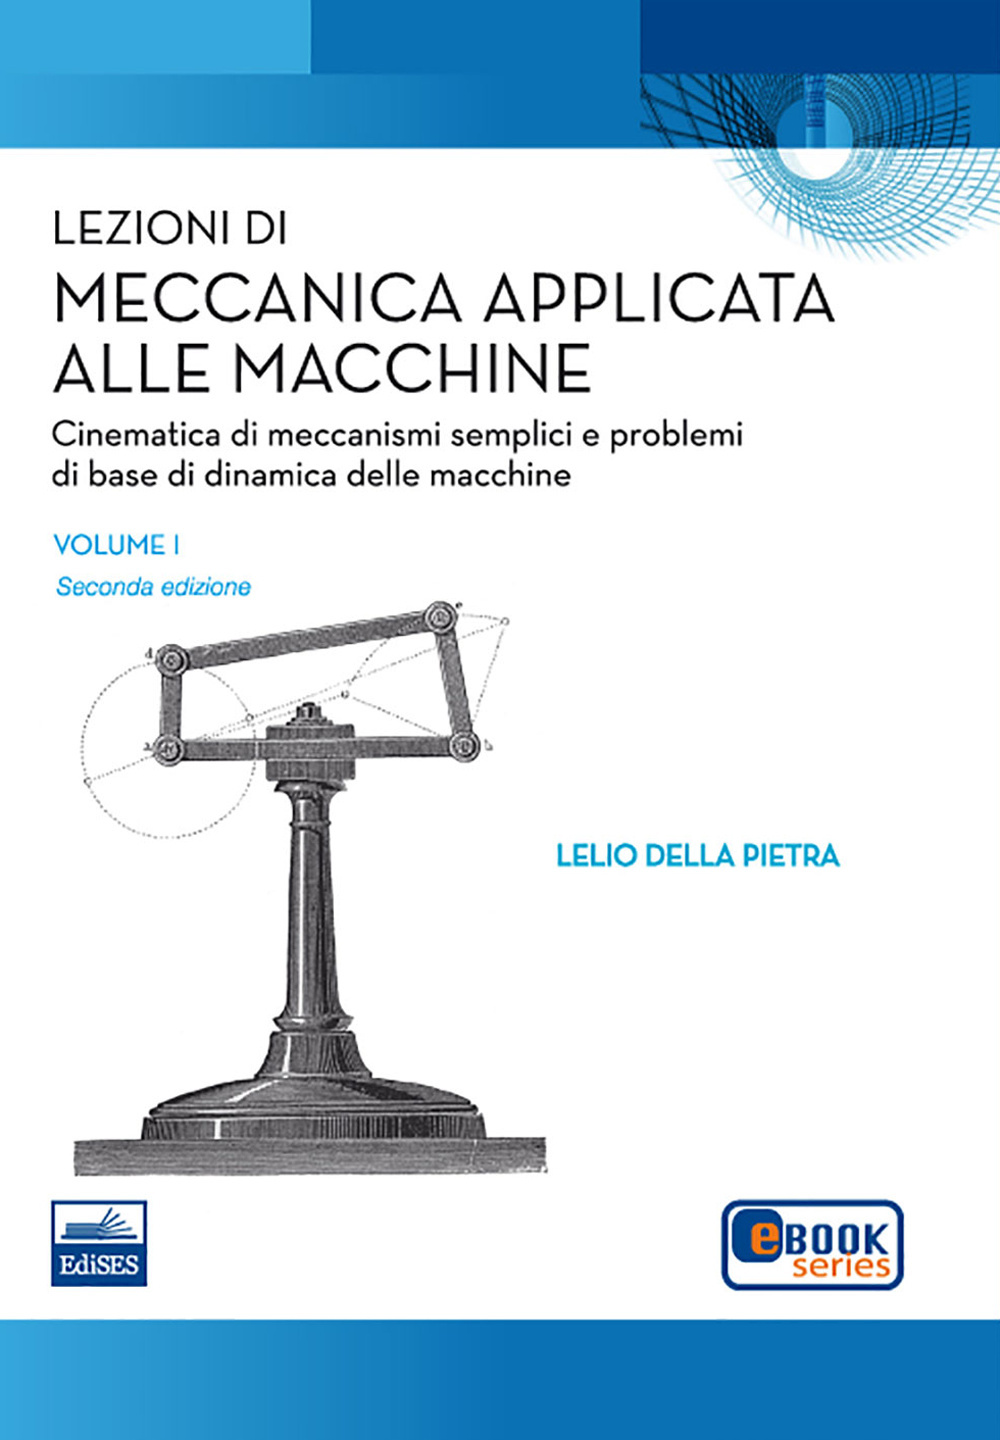 Lezioni di meccanica applicata alle macchine. Vol. 1: Cinematica di meccanismi semplici e problemi di base della dinamica delle macchine